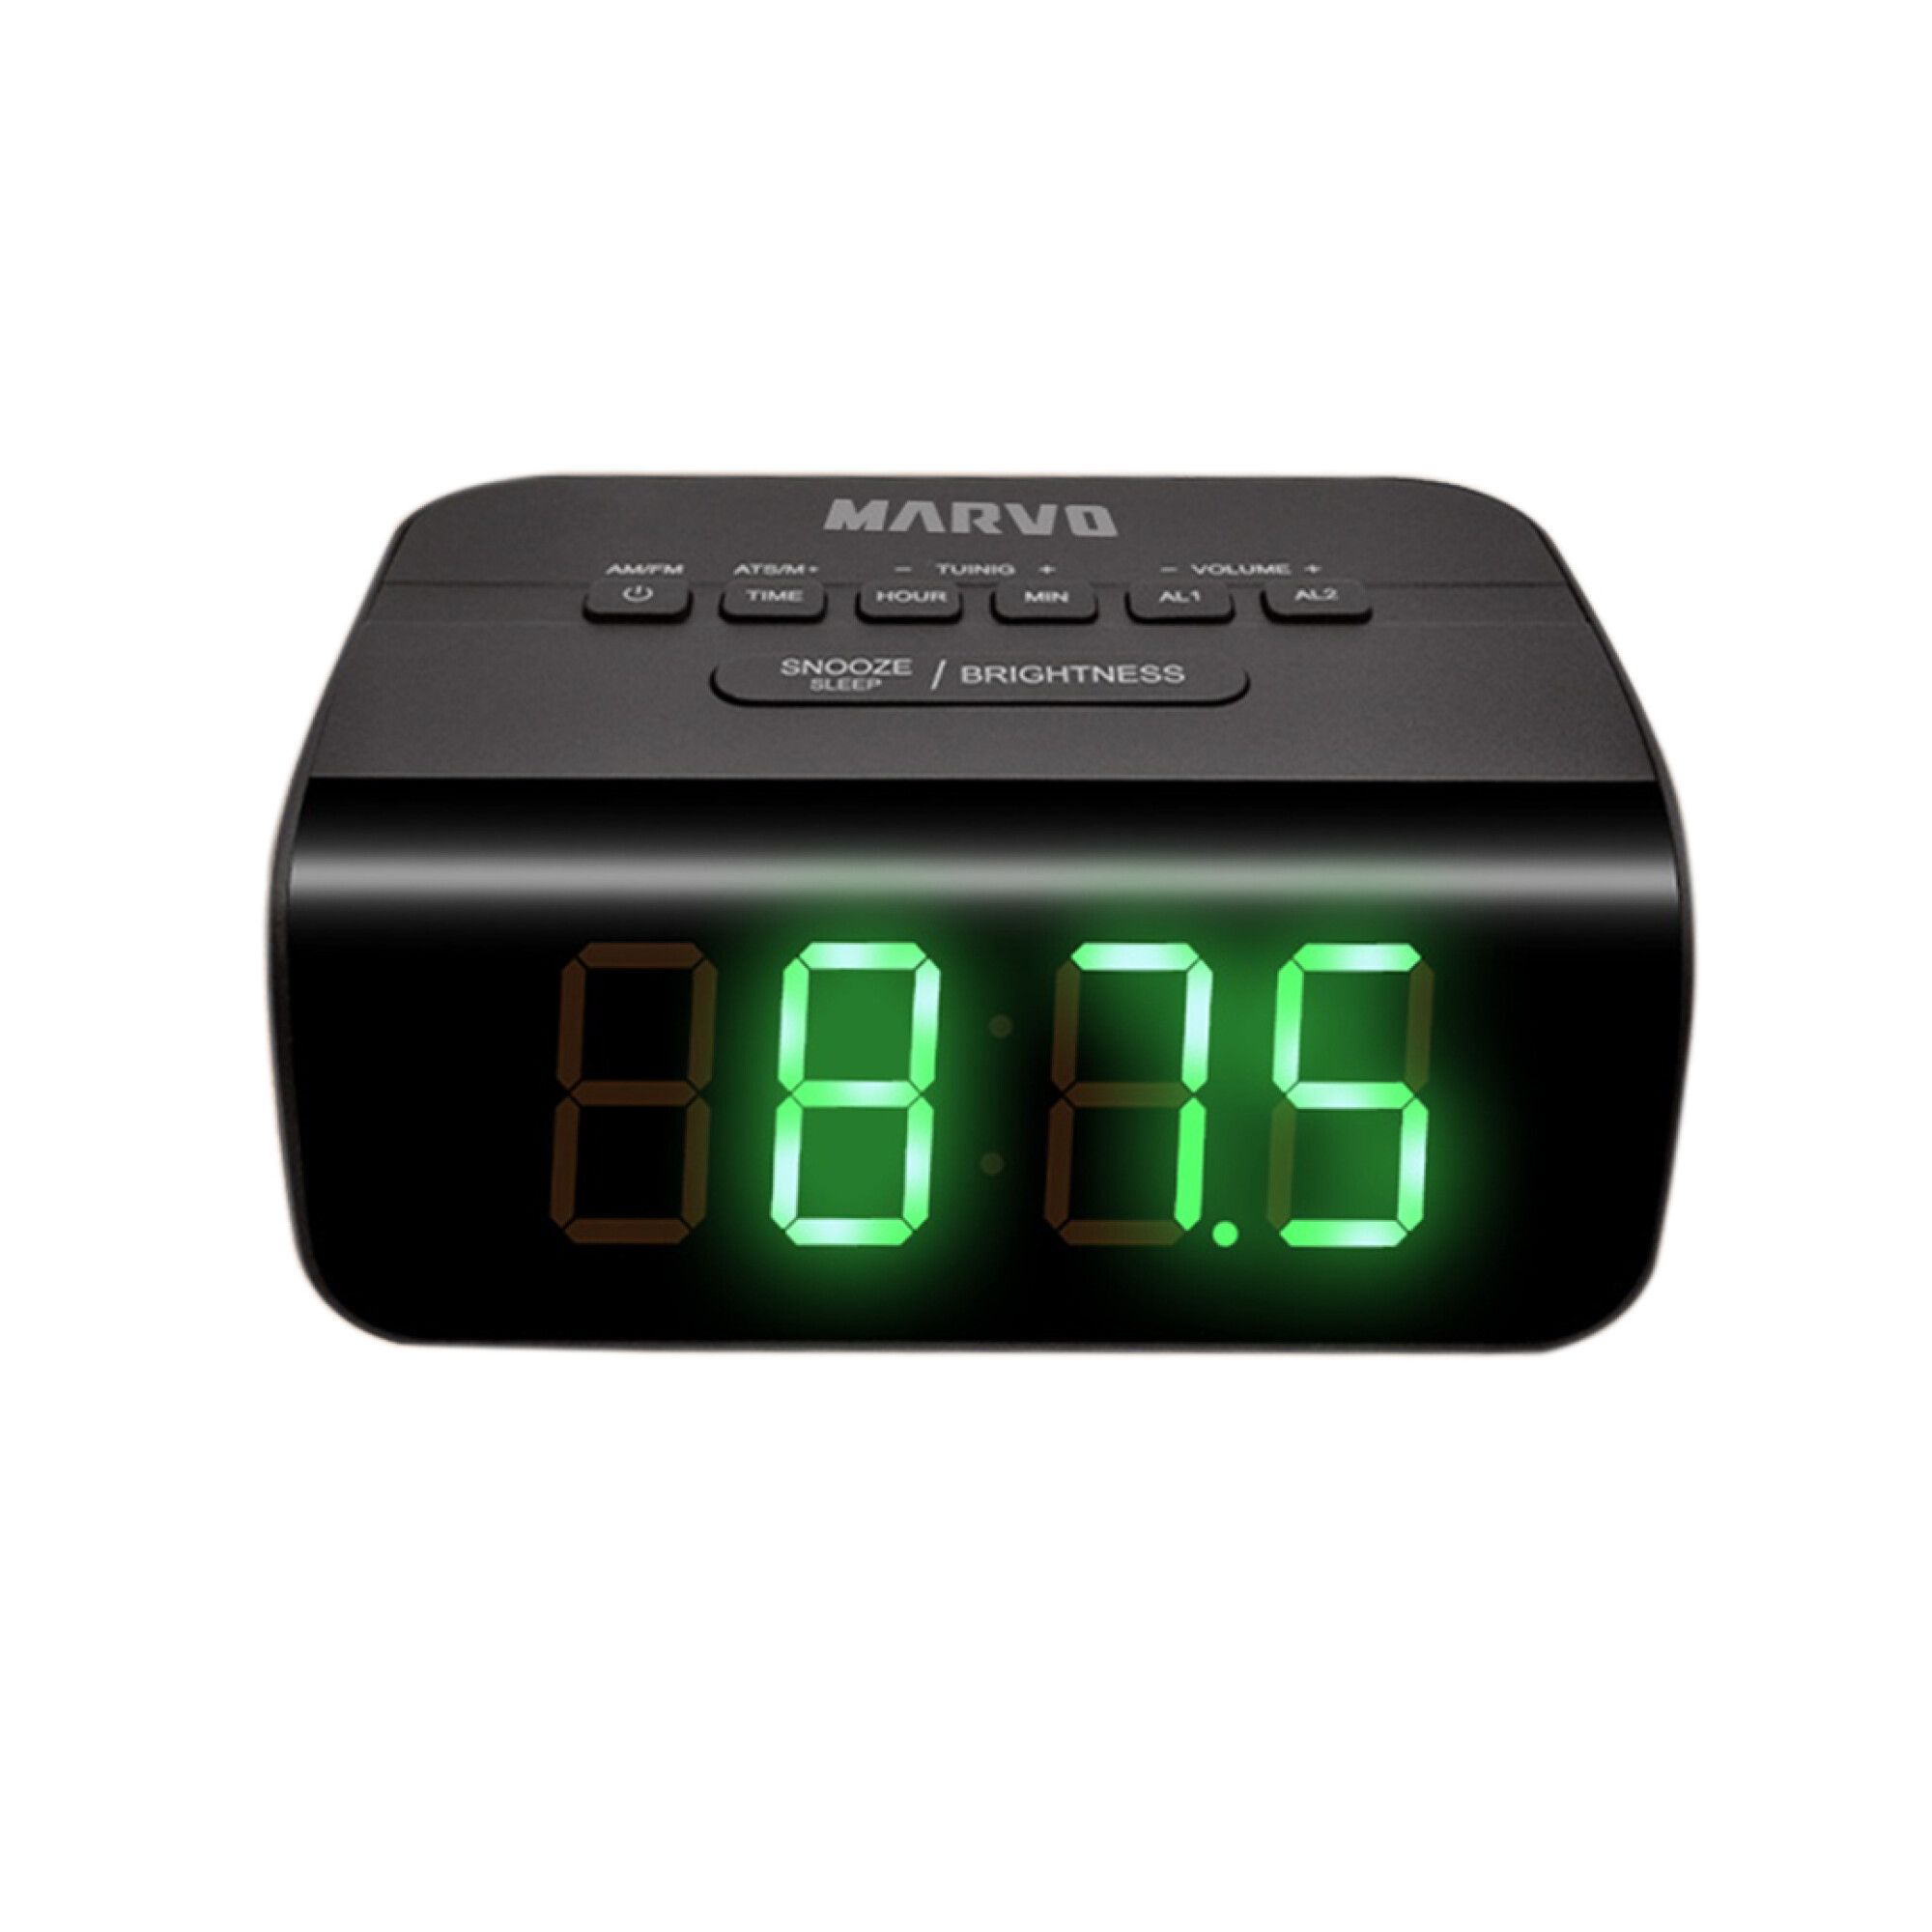 Radio Reloj Despertador AM/FM